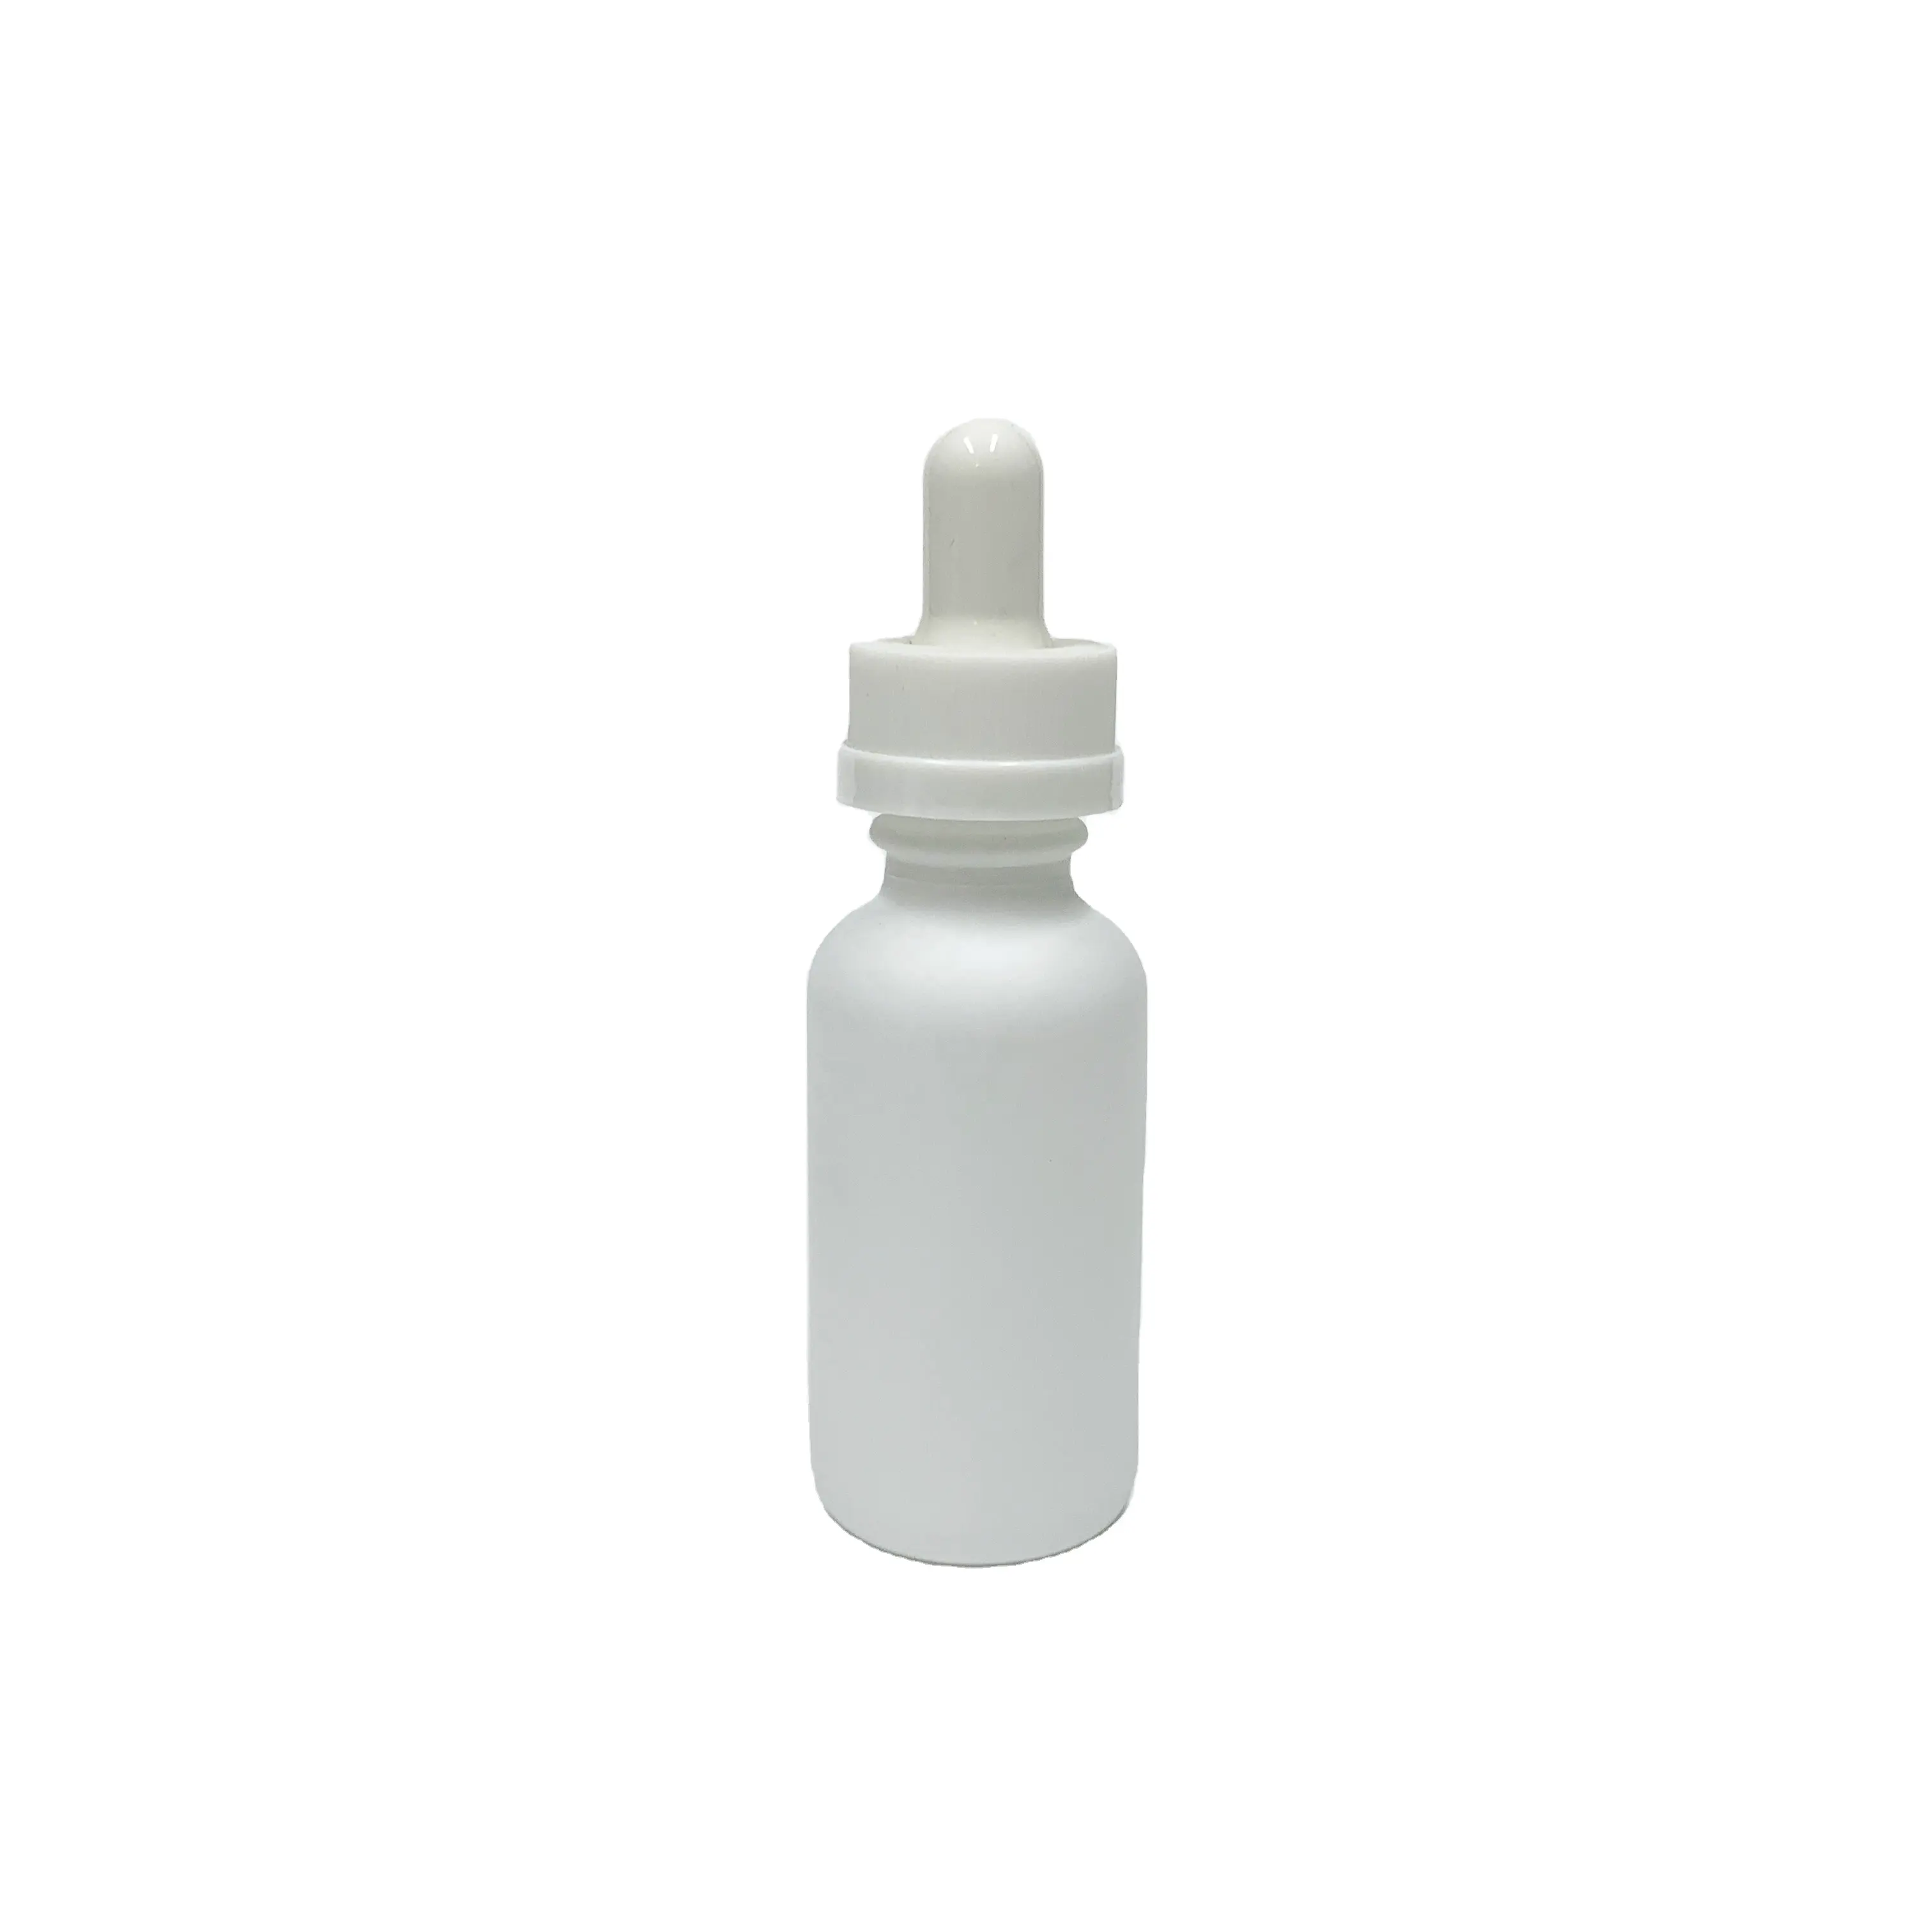 Bouteille d'huile essentielle en verre blanc mat, contenant avec compte-gouttes en plastique anti-enfant, de 2oz 60ml, 30 ml